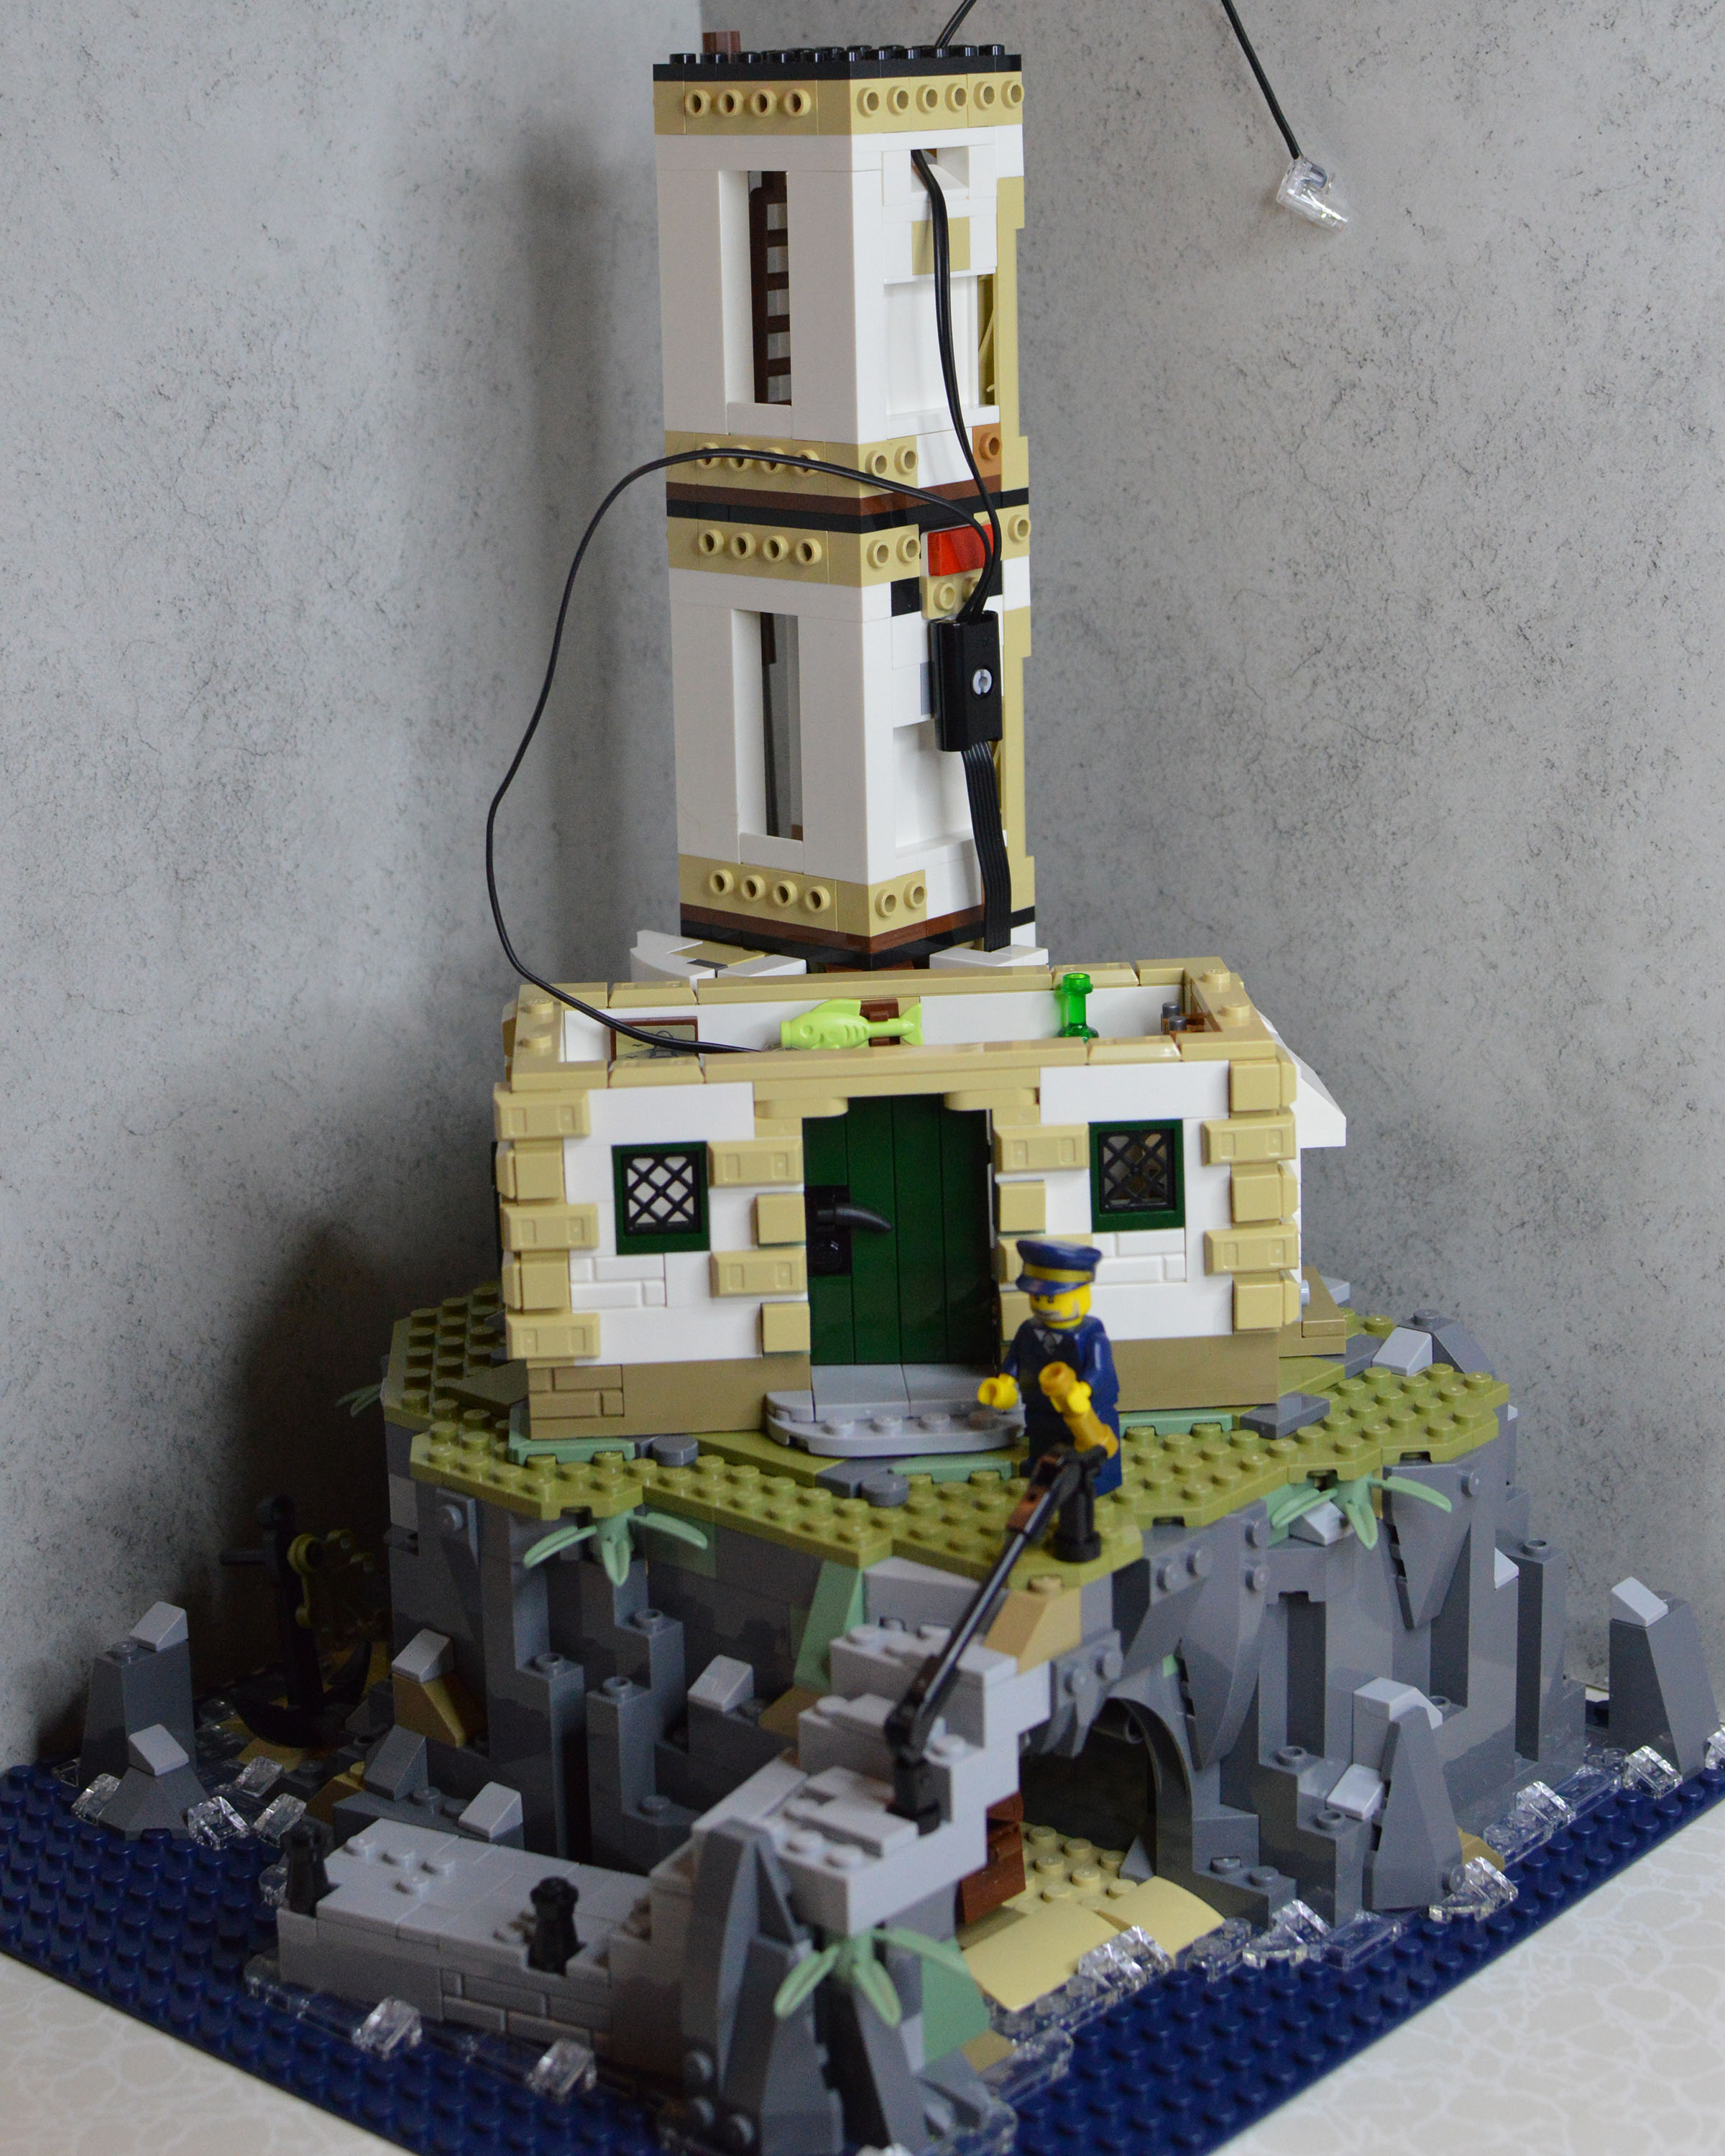 Lego Ideas Motorized Lighthouse